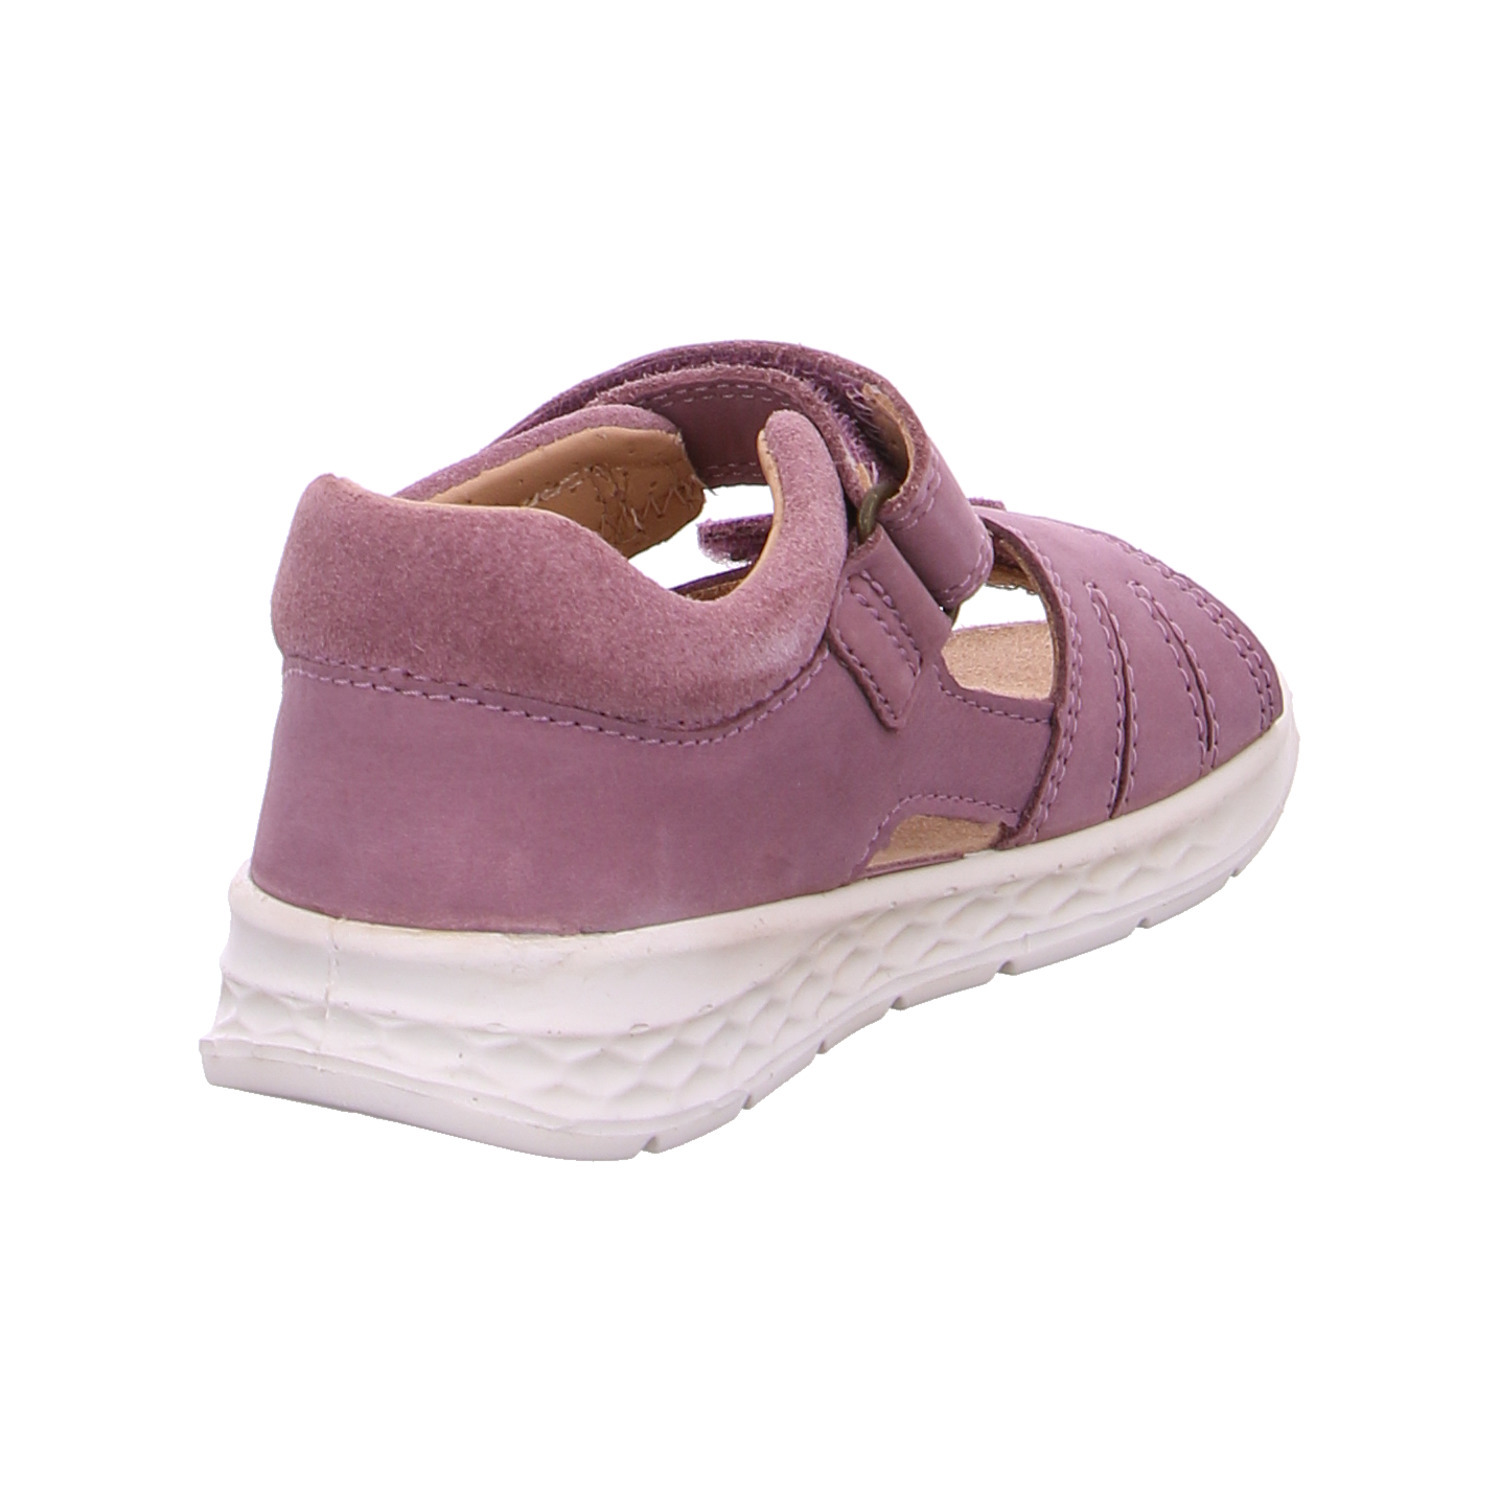 superfit-kinder-sandaletten-mädchen-violett-120058-20